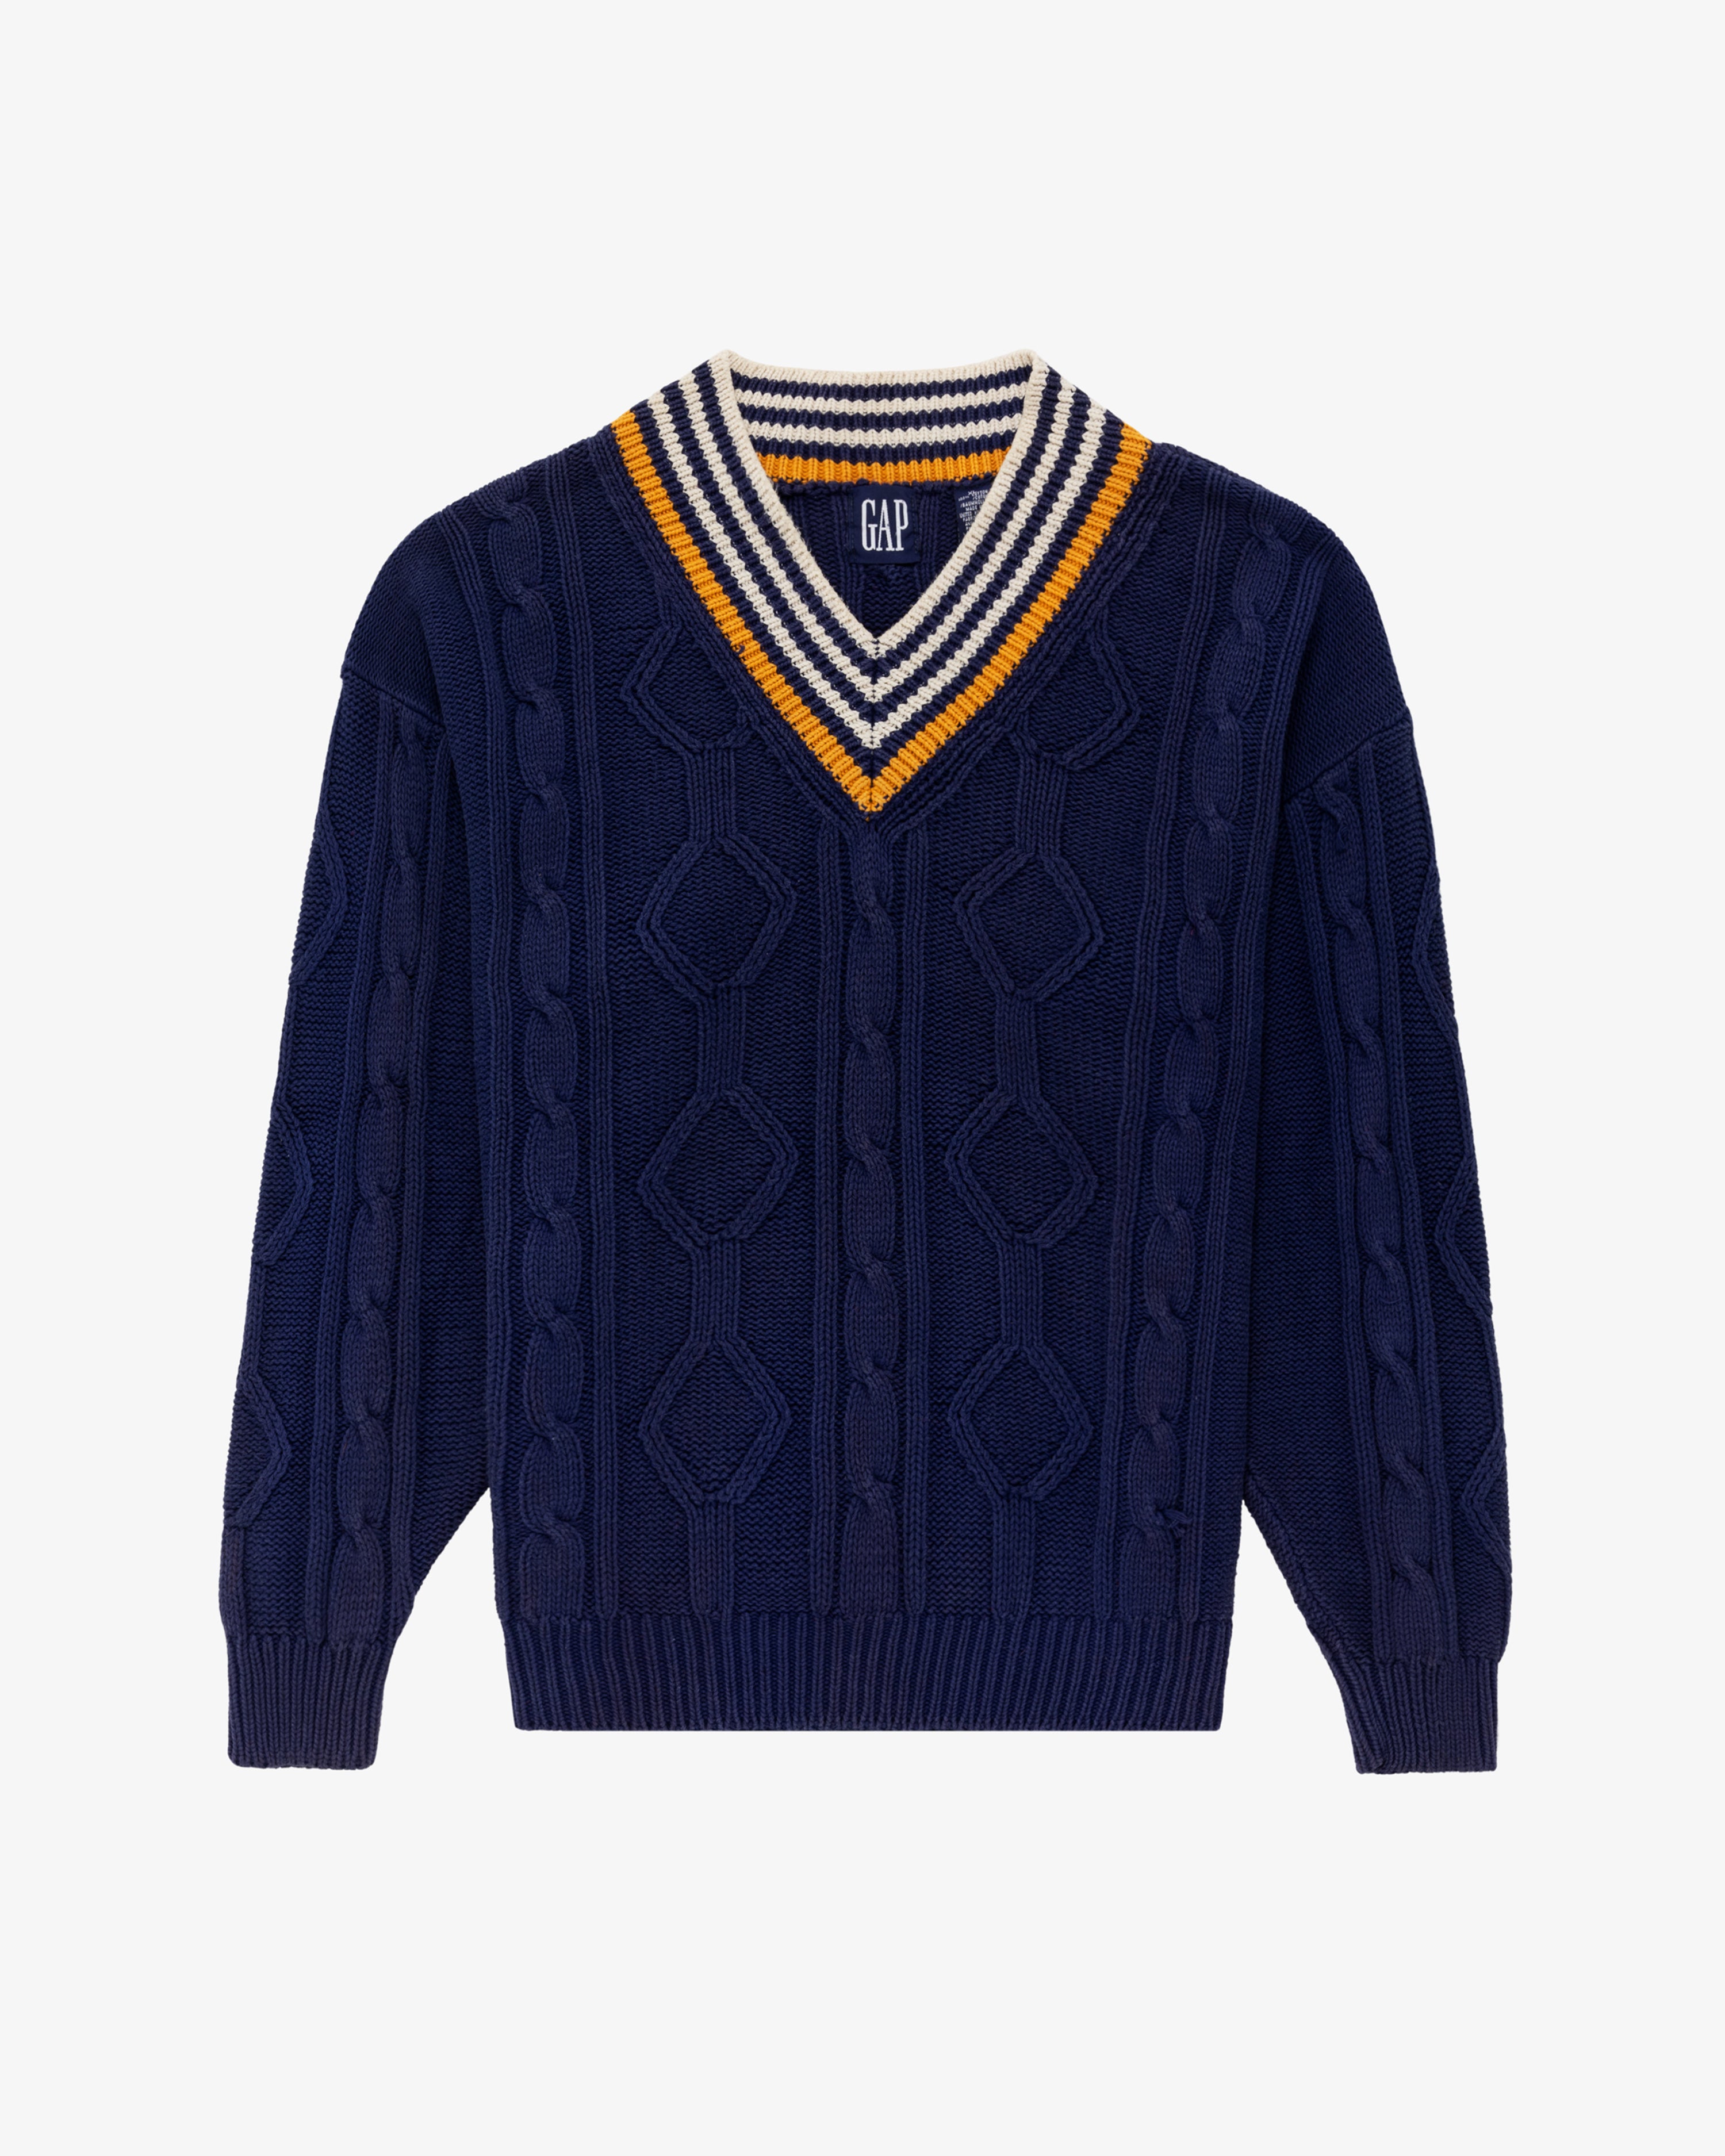 Vintage Gap Cable Knit Sweater – Aimé Leon Dore